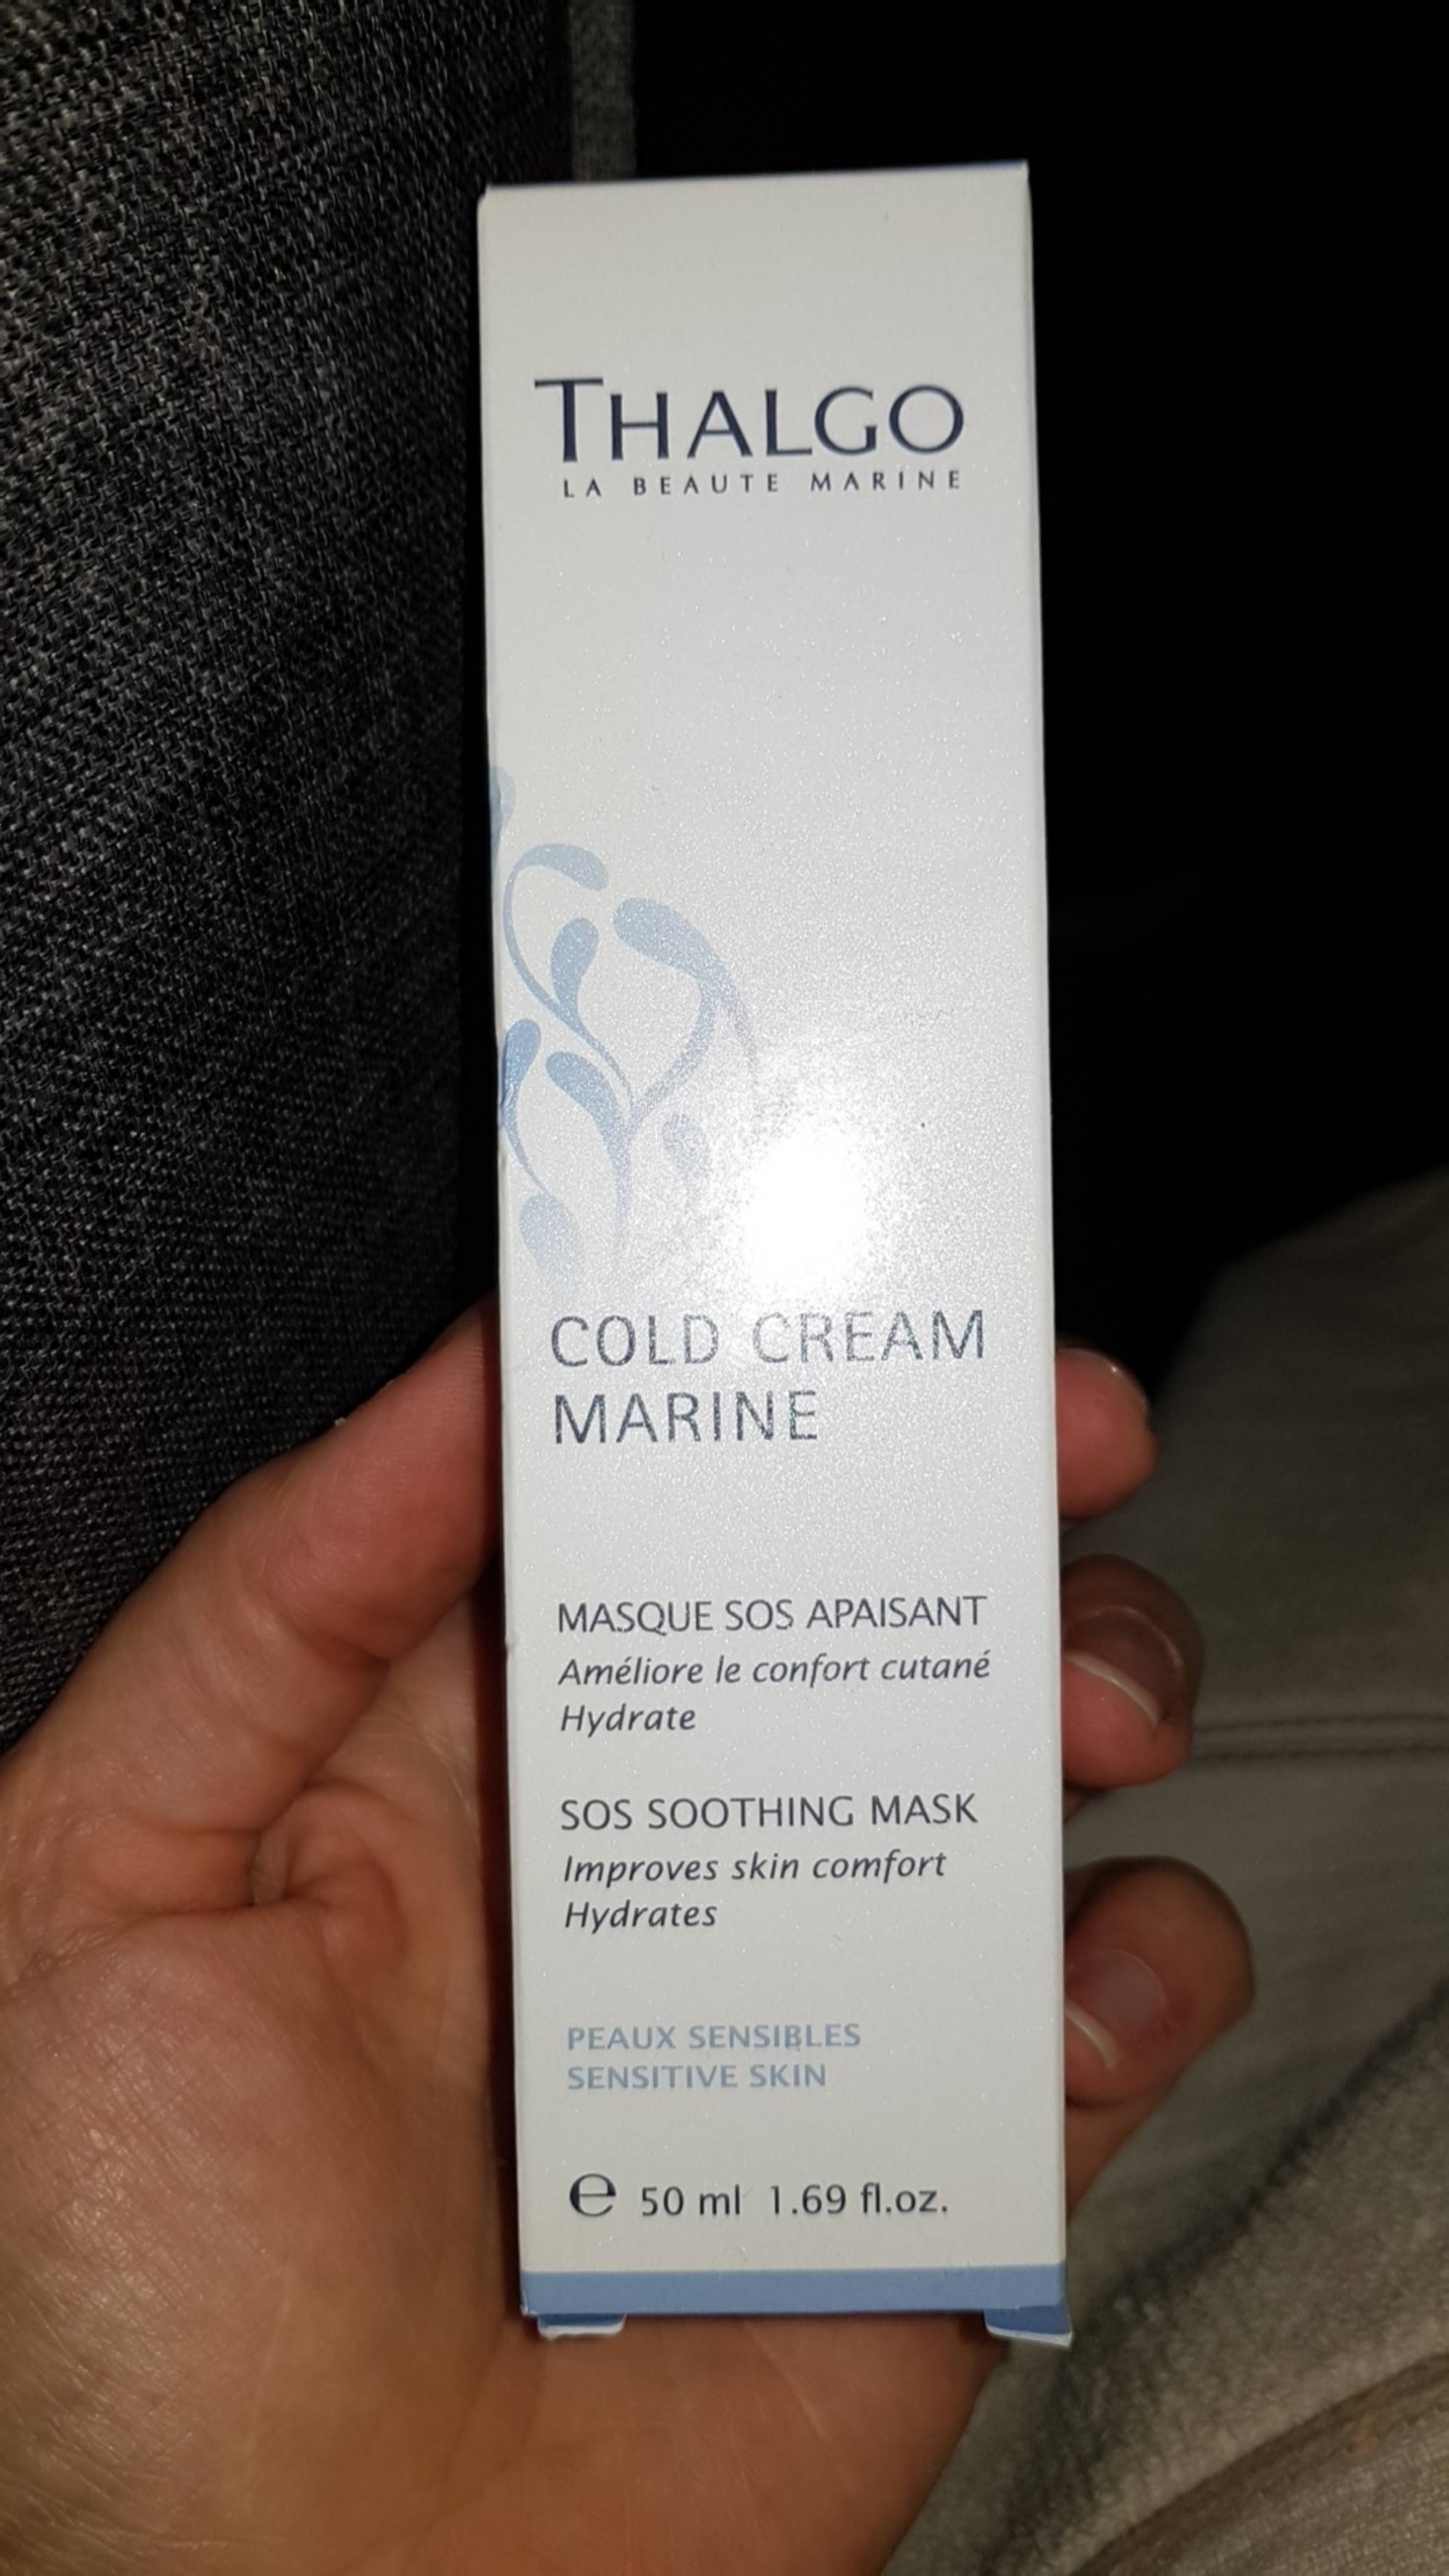 THALGO - Cold cream marine - Masque SOS apaisant